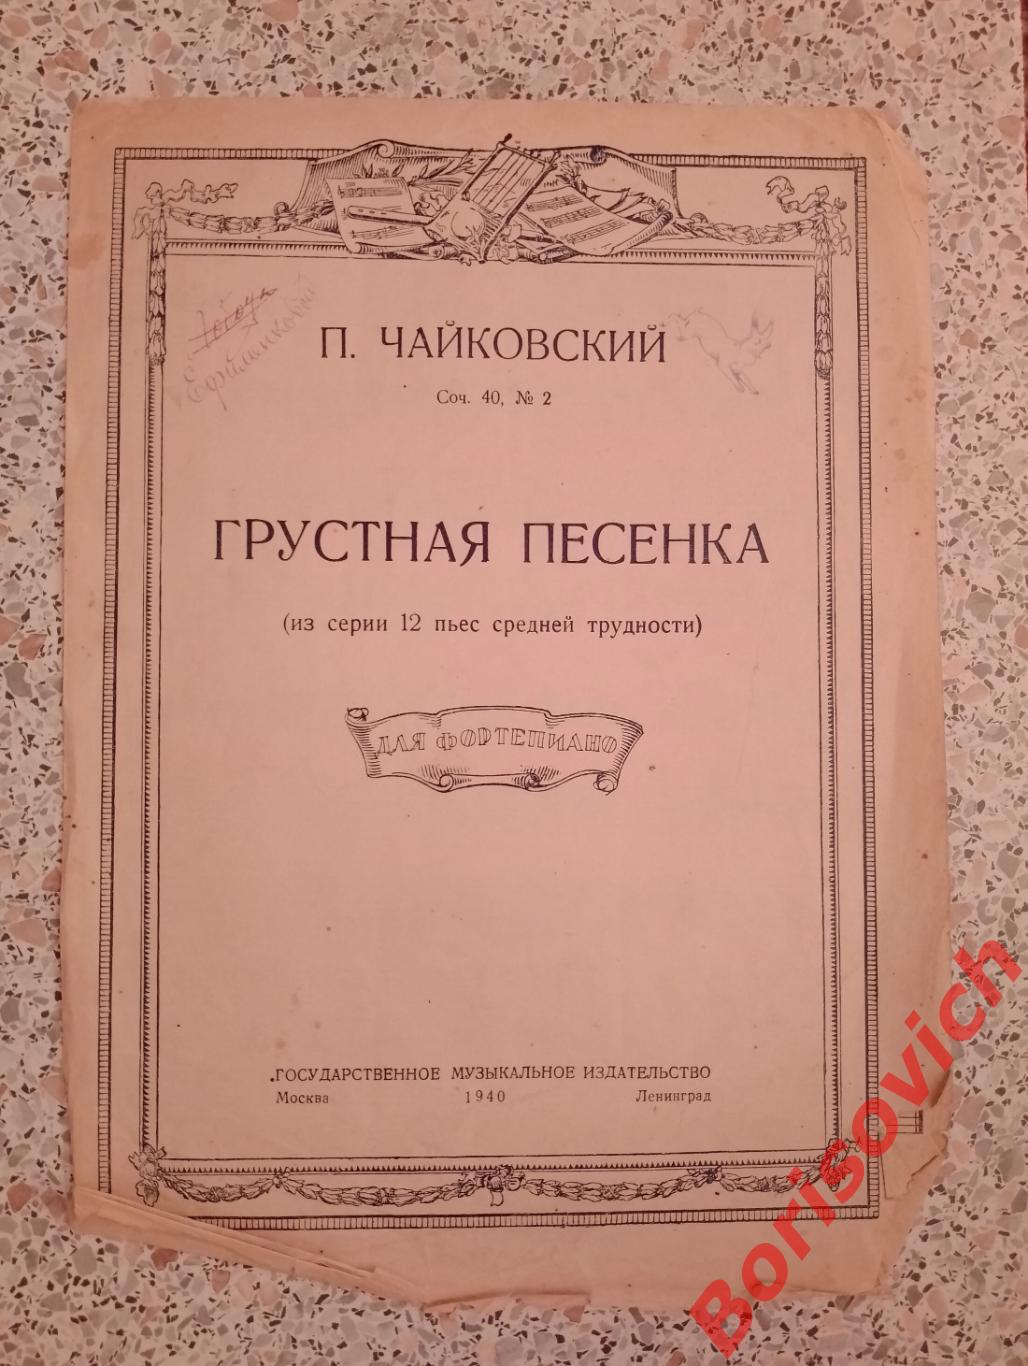 П. Чайковский ГРУСТНАЯ ПЕСЕНКА 1940